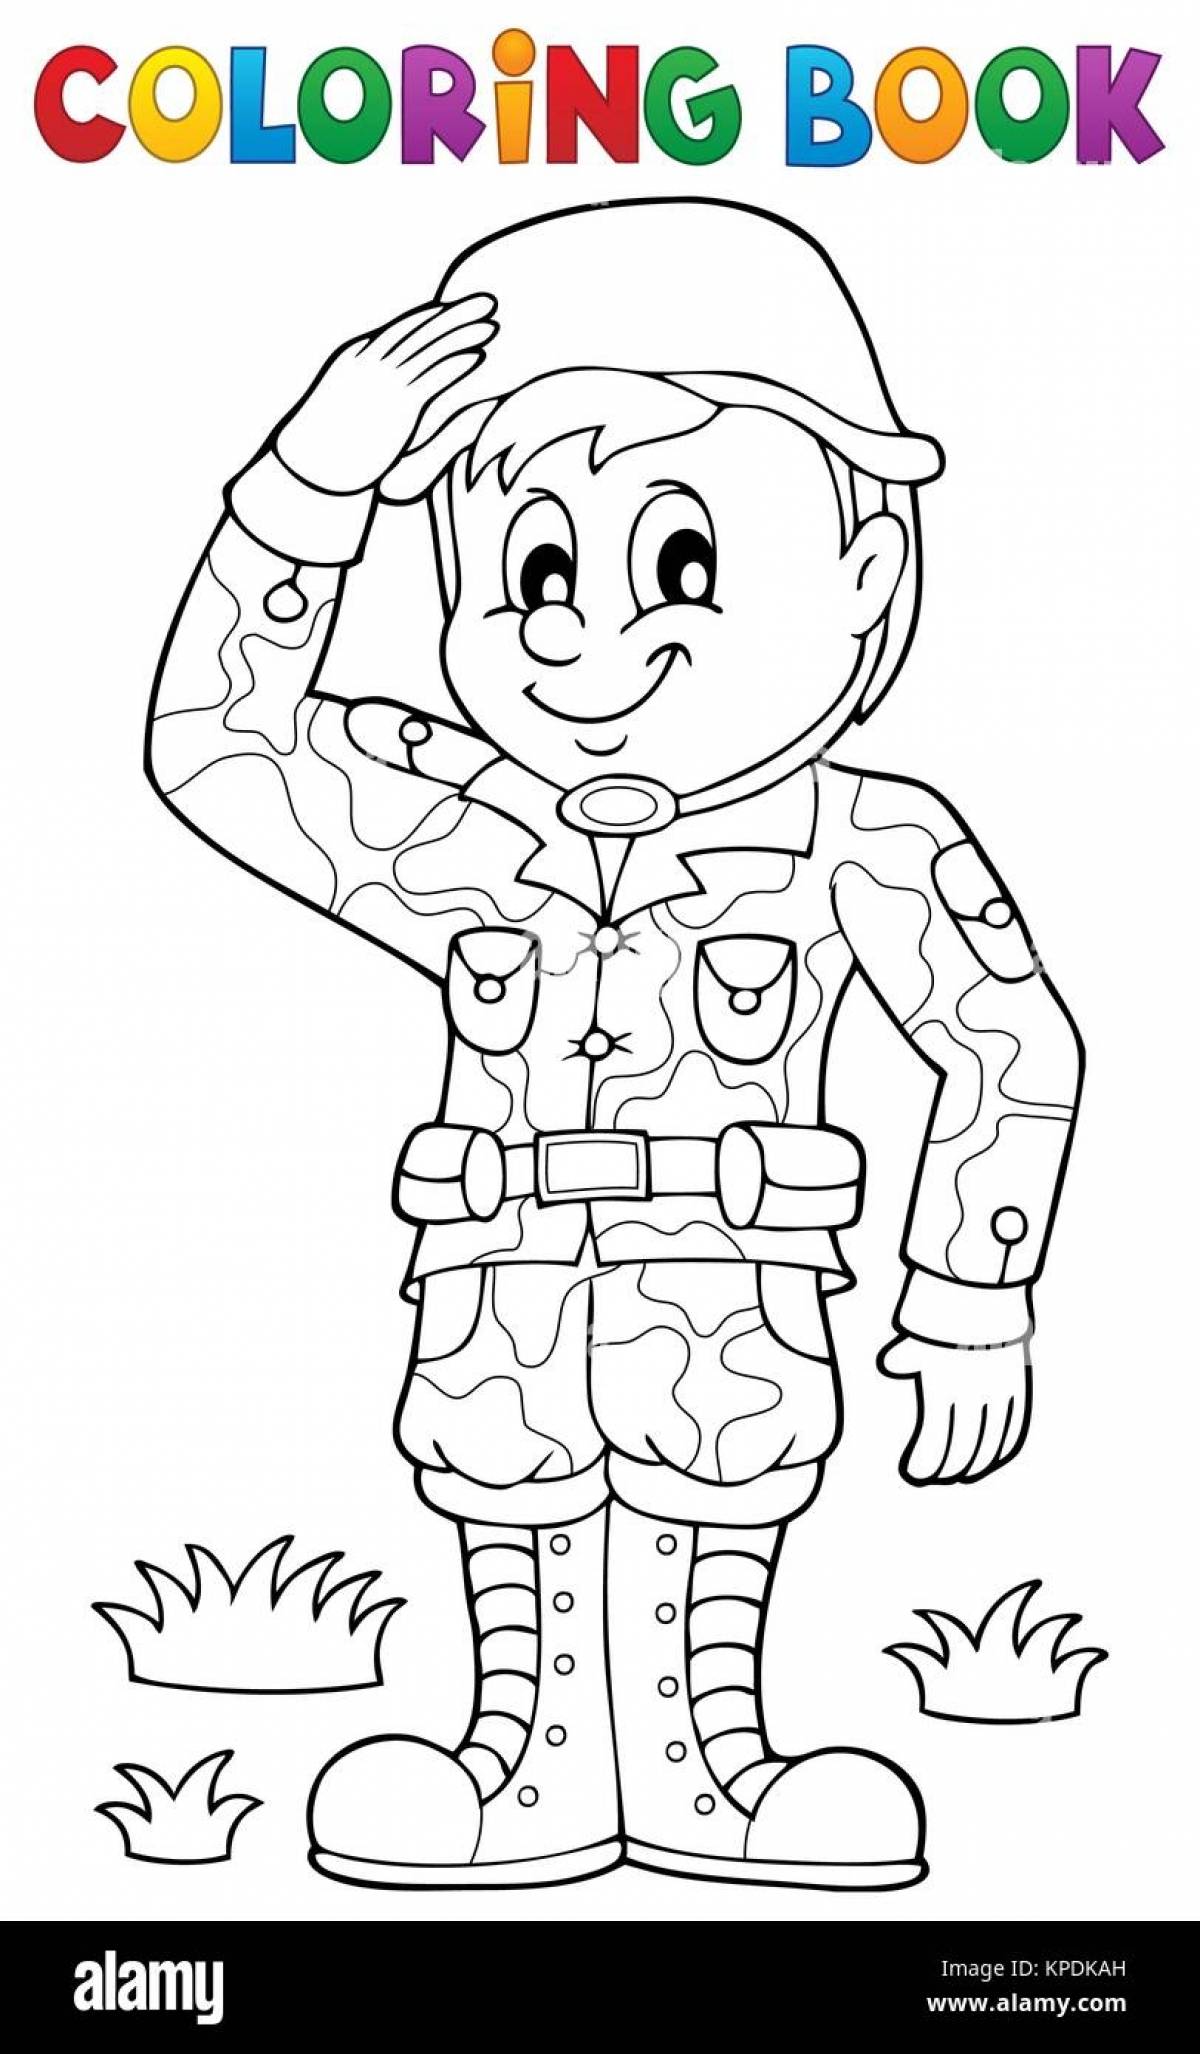 Солдат раскраска для детей в камуфляже